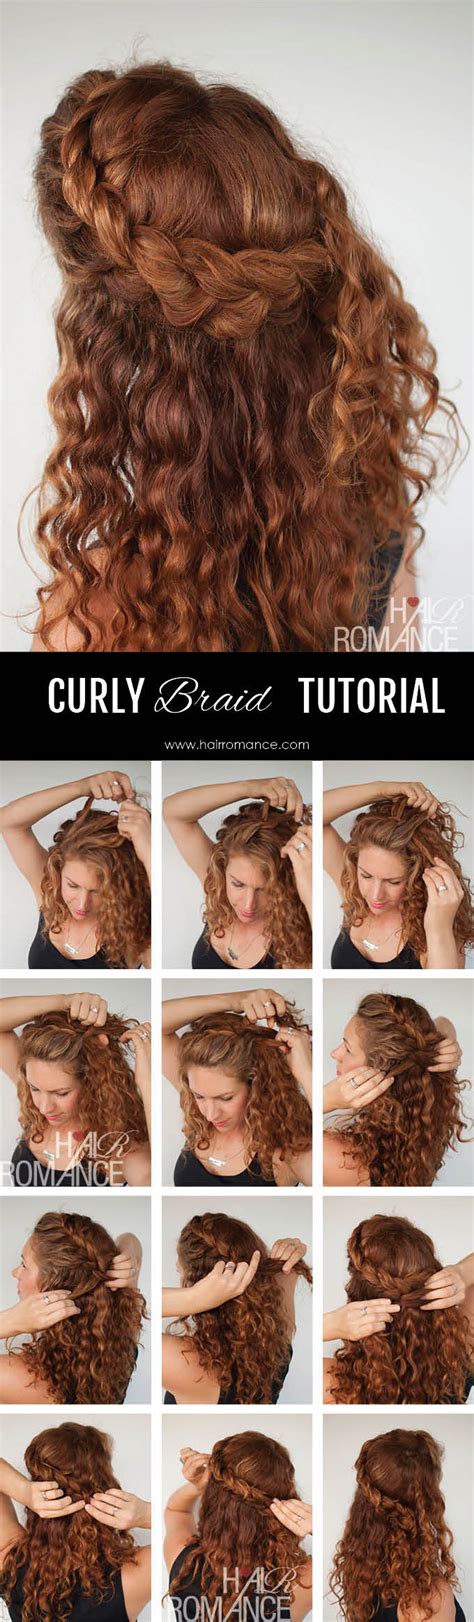 curly hair tutorial    braid hairstyle hair romance